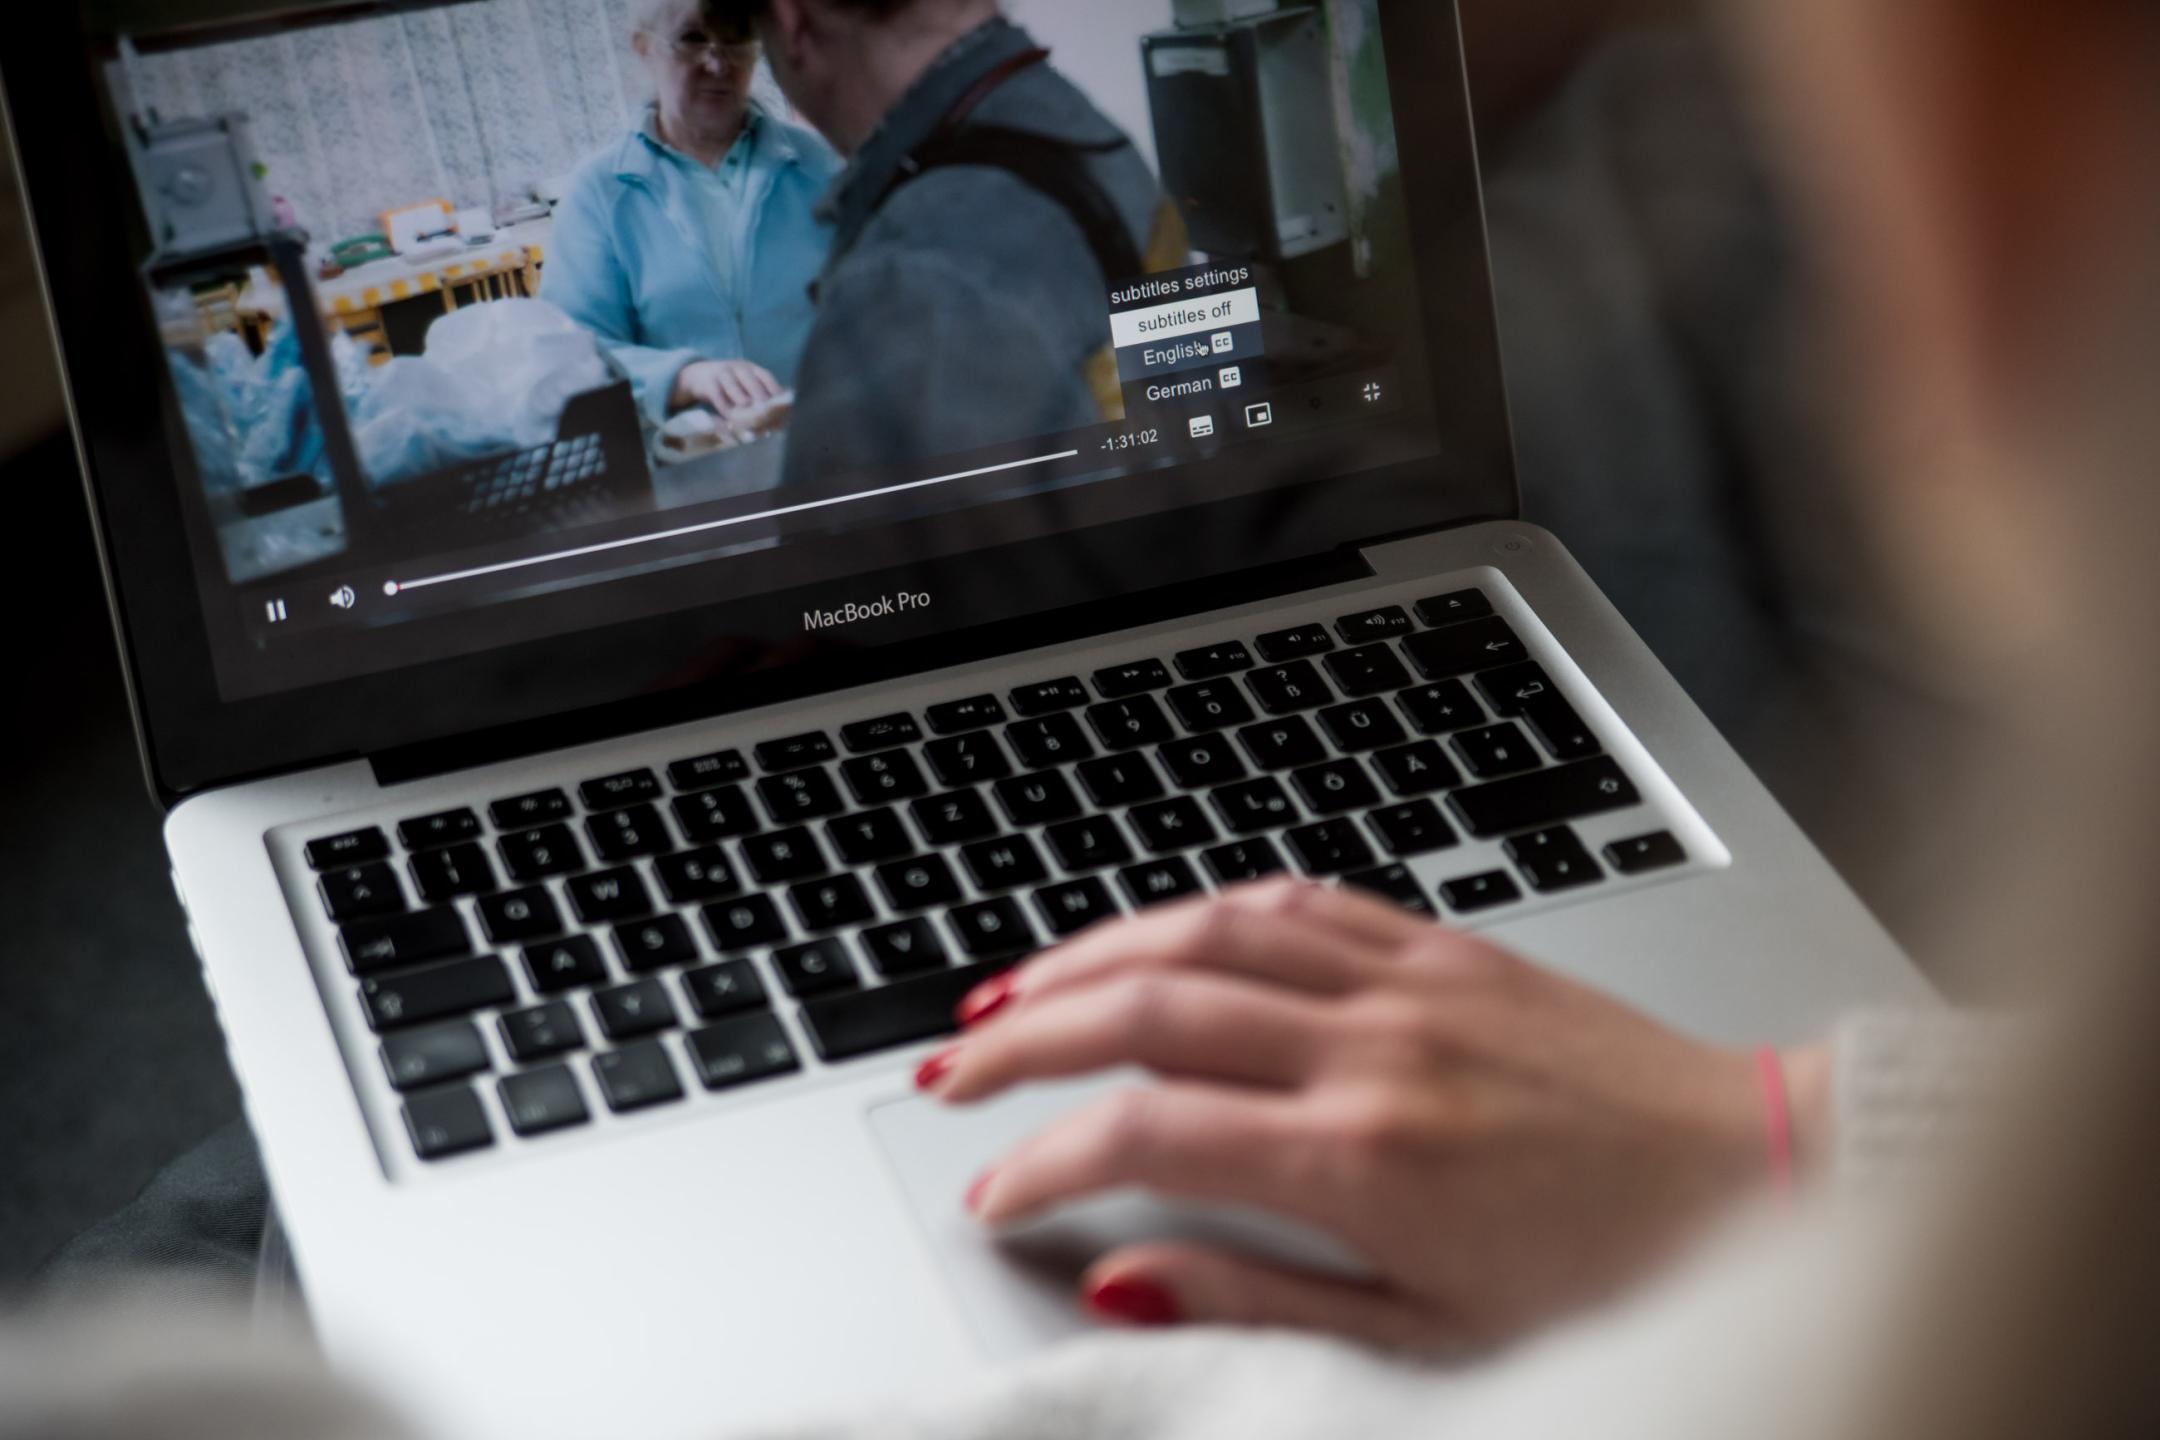 Eine Hand bedient das Mauspad eines MacBooks, auf dem Laptop-Bildschirm ist ein Videomenü aufgeklappt mit den Wahloptionen Subtitles off, English und German.